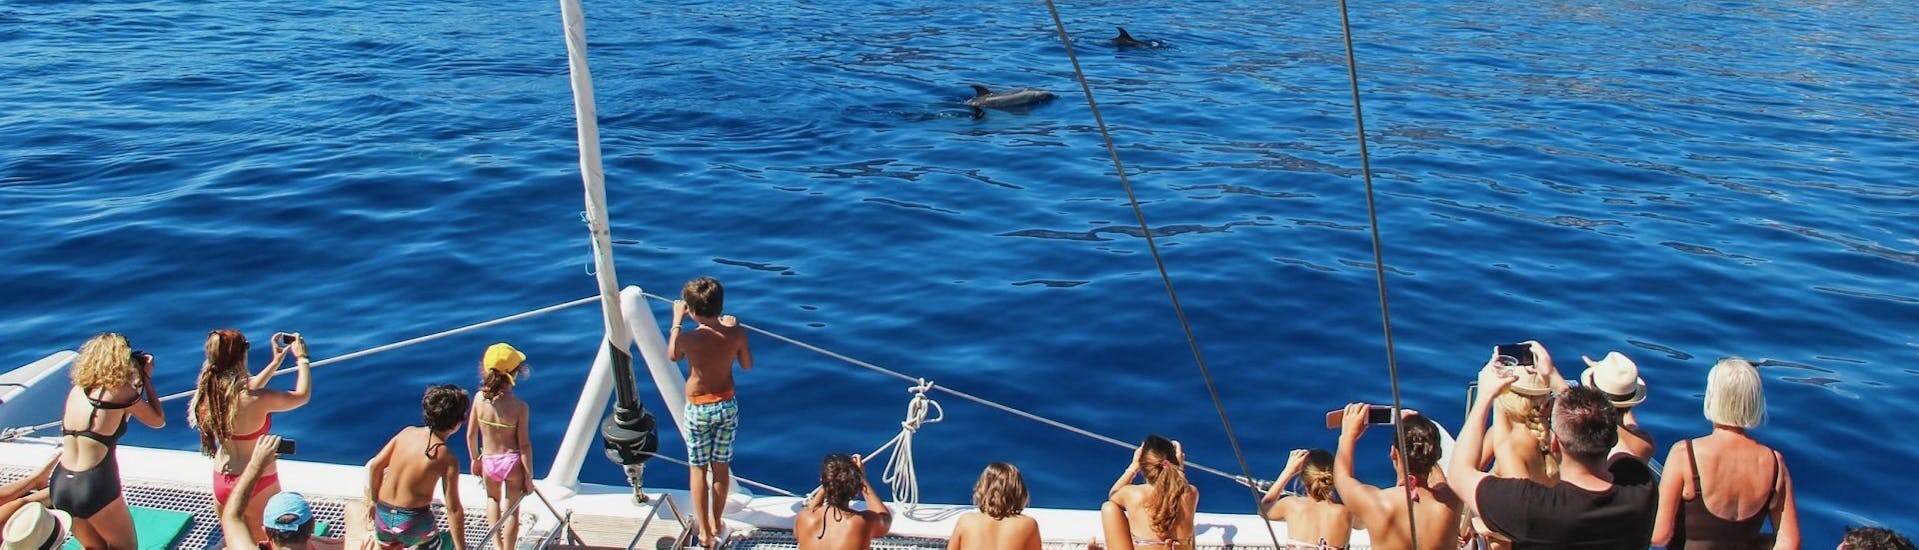 Teilnehmer fotografieren Delfine und Wale während einer Katamaran-Tour in Funchal im Rahmen einer von VMT Madeira angebotenen Aktivität.